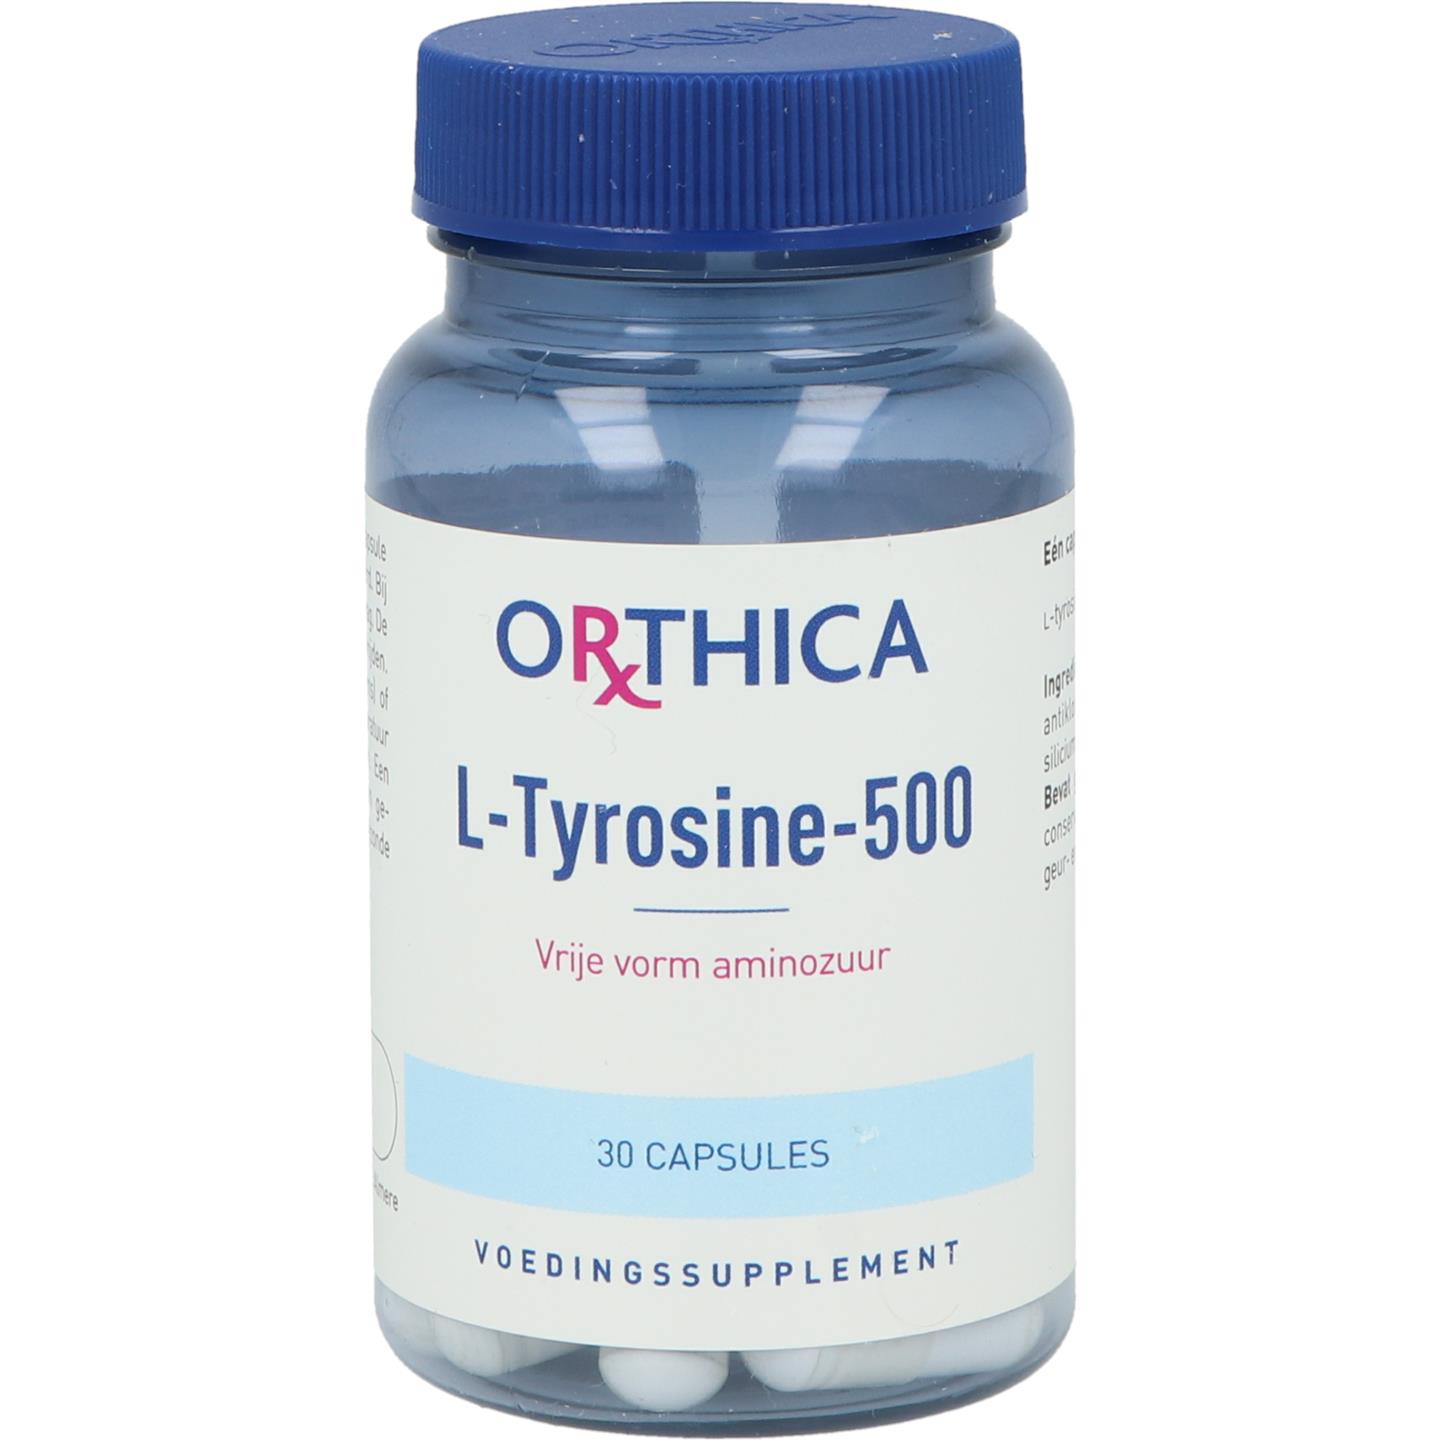 L-Tyrosine-500